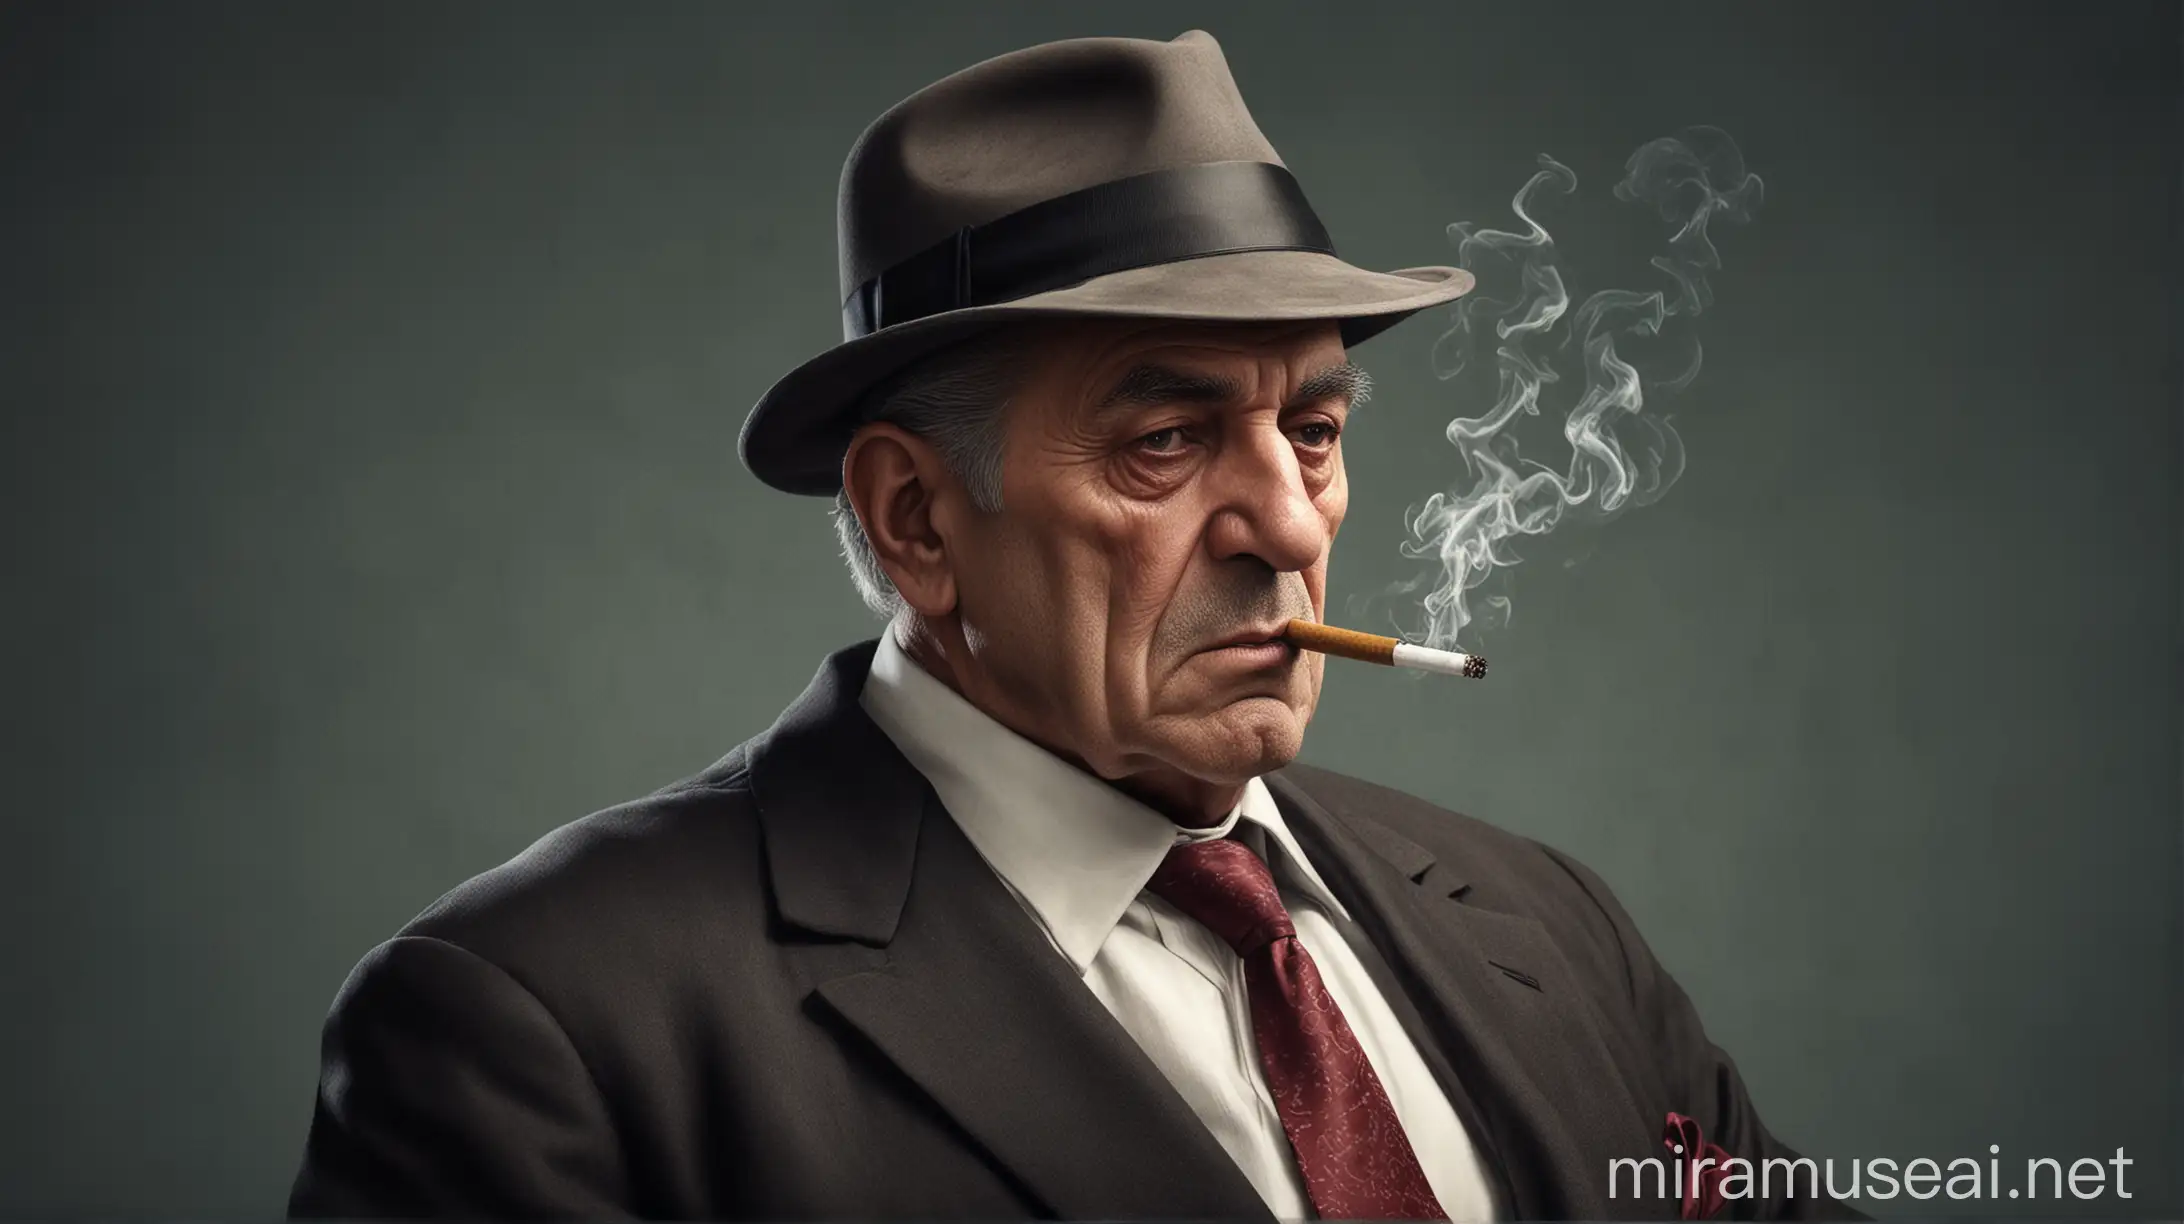 Realistic old Mafia boss 
smoking